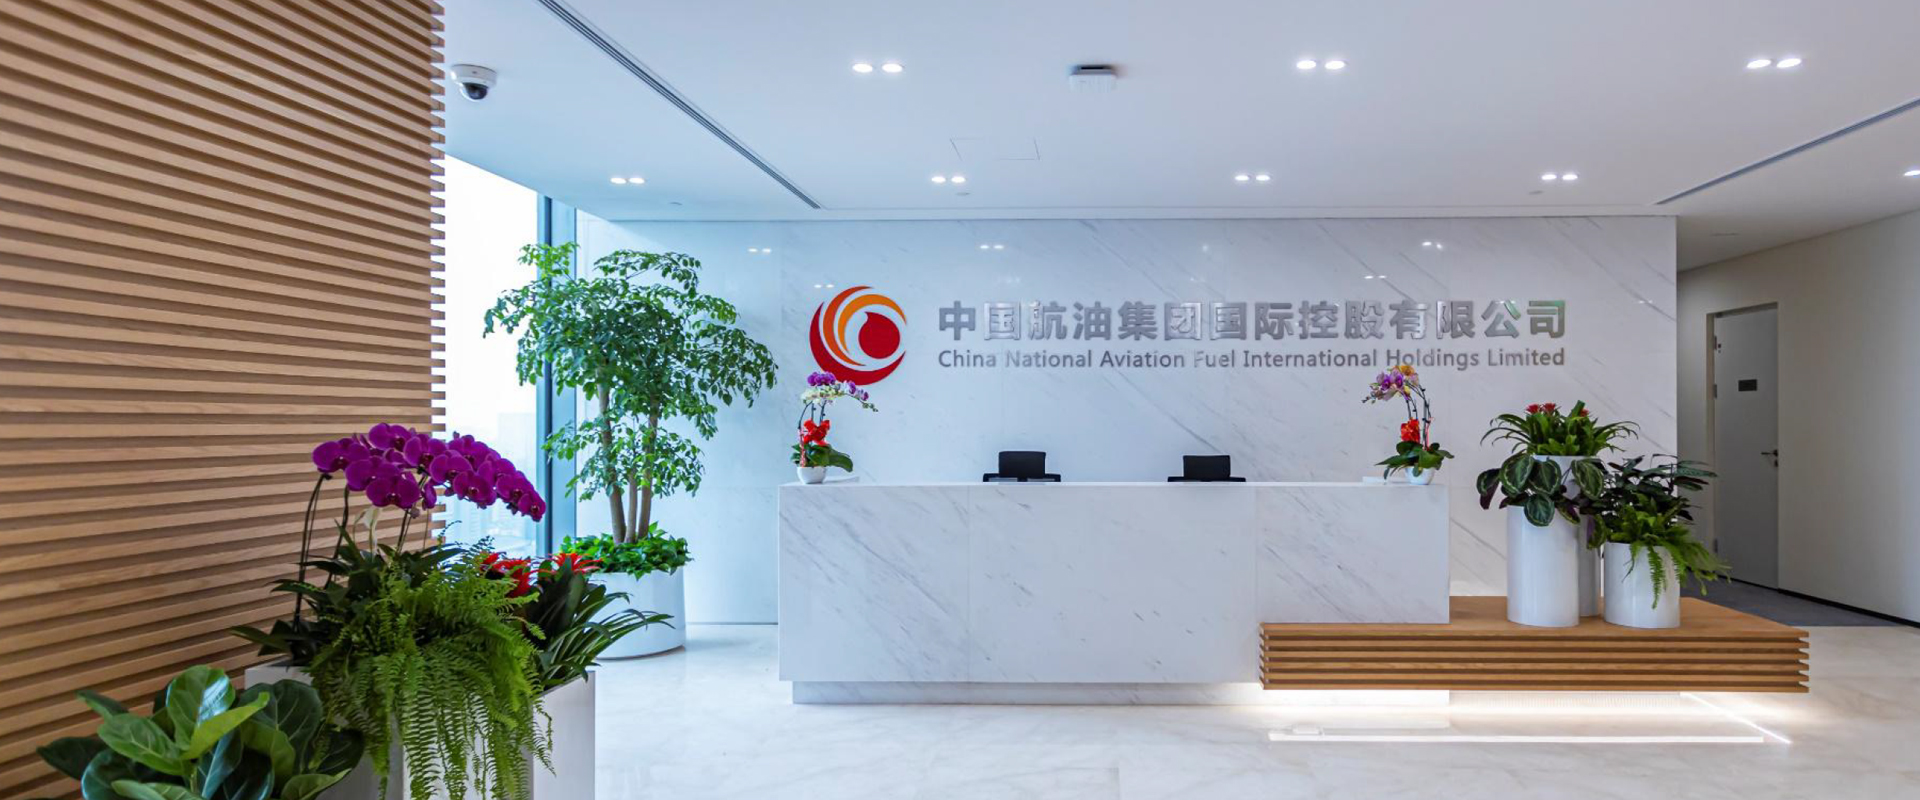 中国航油集团国际控股有限公司